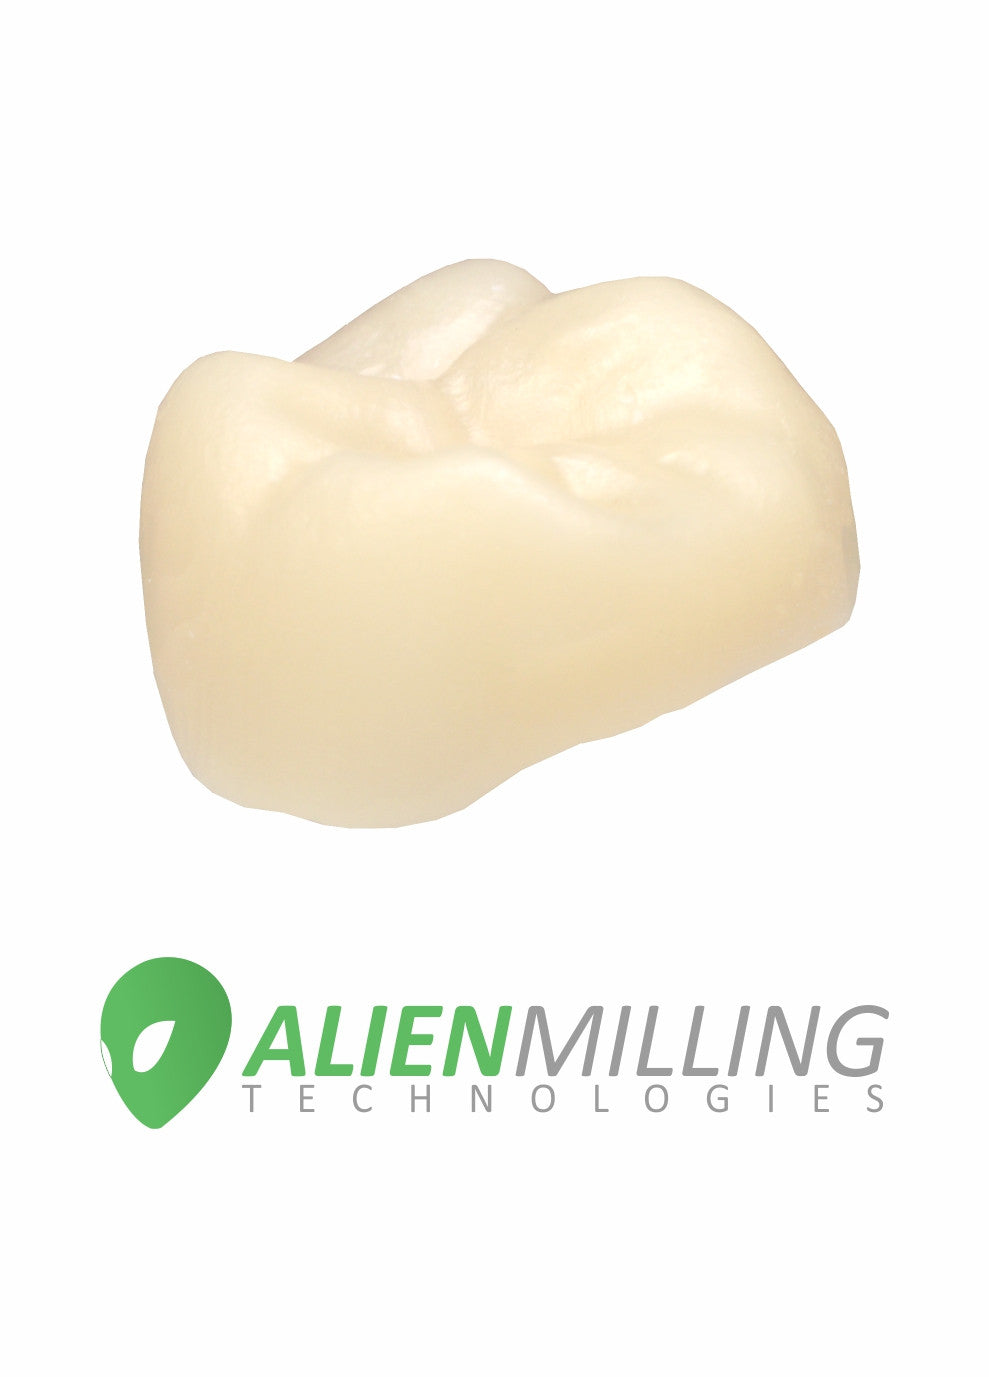 Alien™ Solid Zirconia - Alien Milling Technologies
